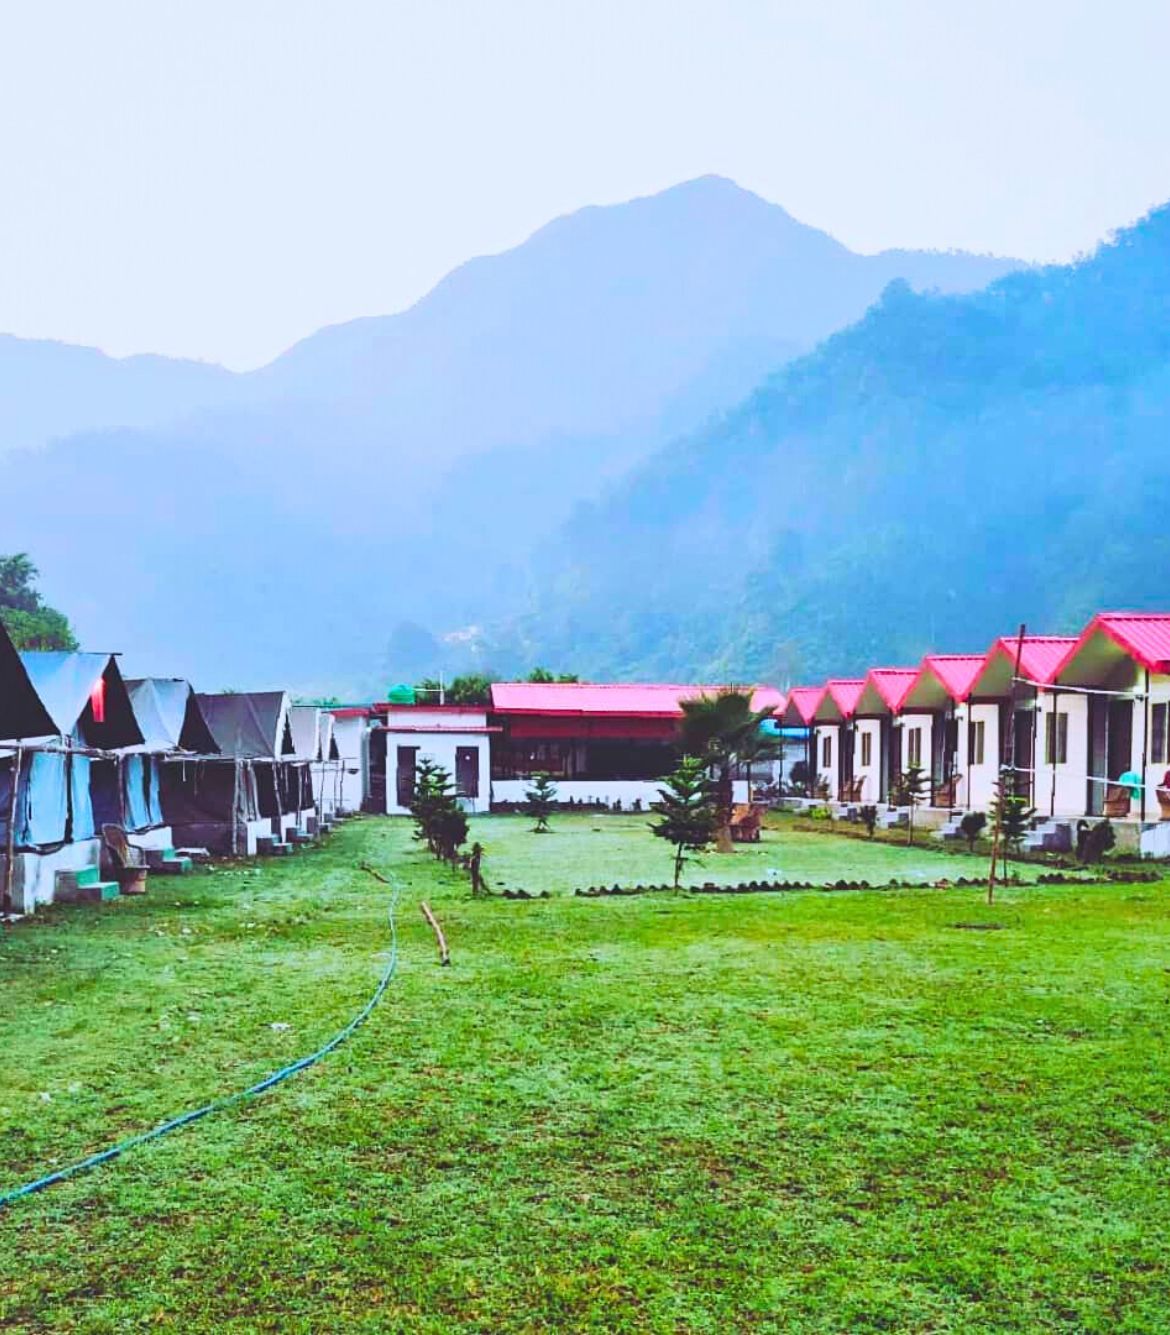 Mambos Camp Rishikesh